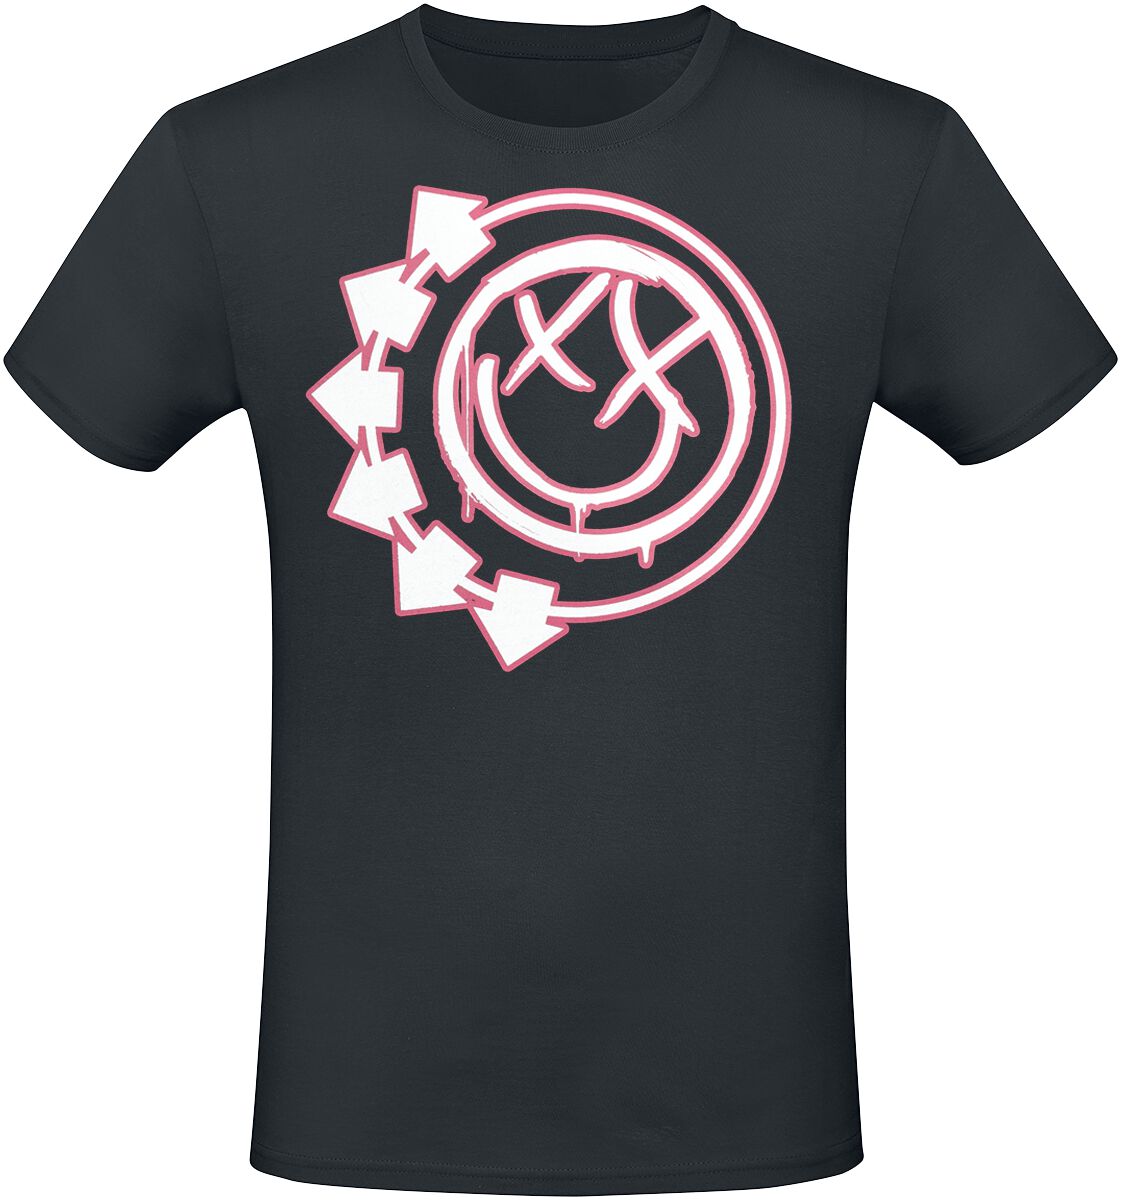 Blink-182 T-Shirt - Harrows Smiley - S bis 3XL - für Männer - Größe 3XL - schwarz  - Lizenziertes Merchandise!